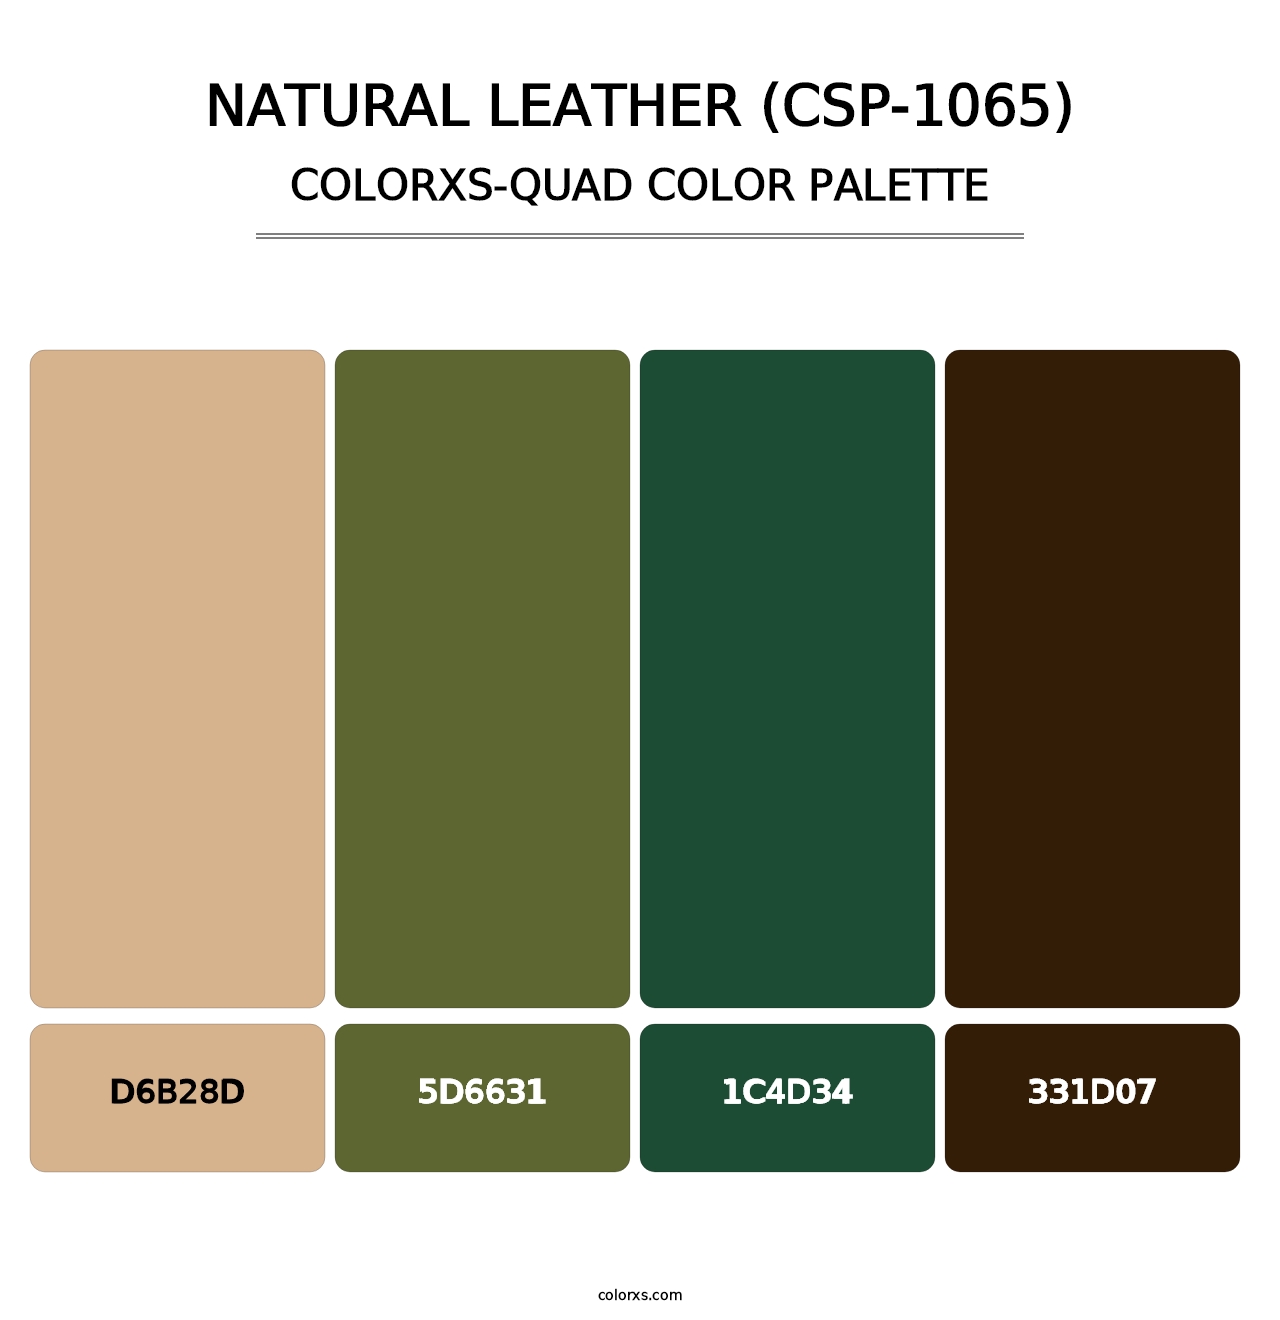 Natural Leather (CSP-1065) - Colorxs Quad Palette